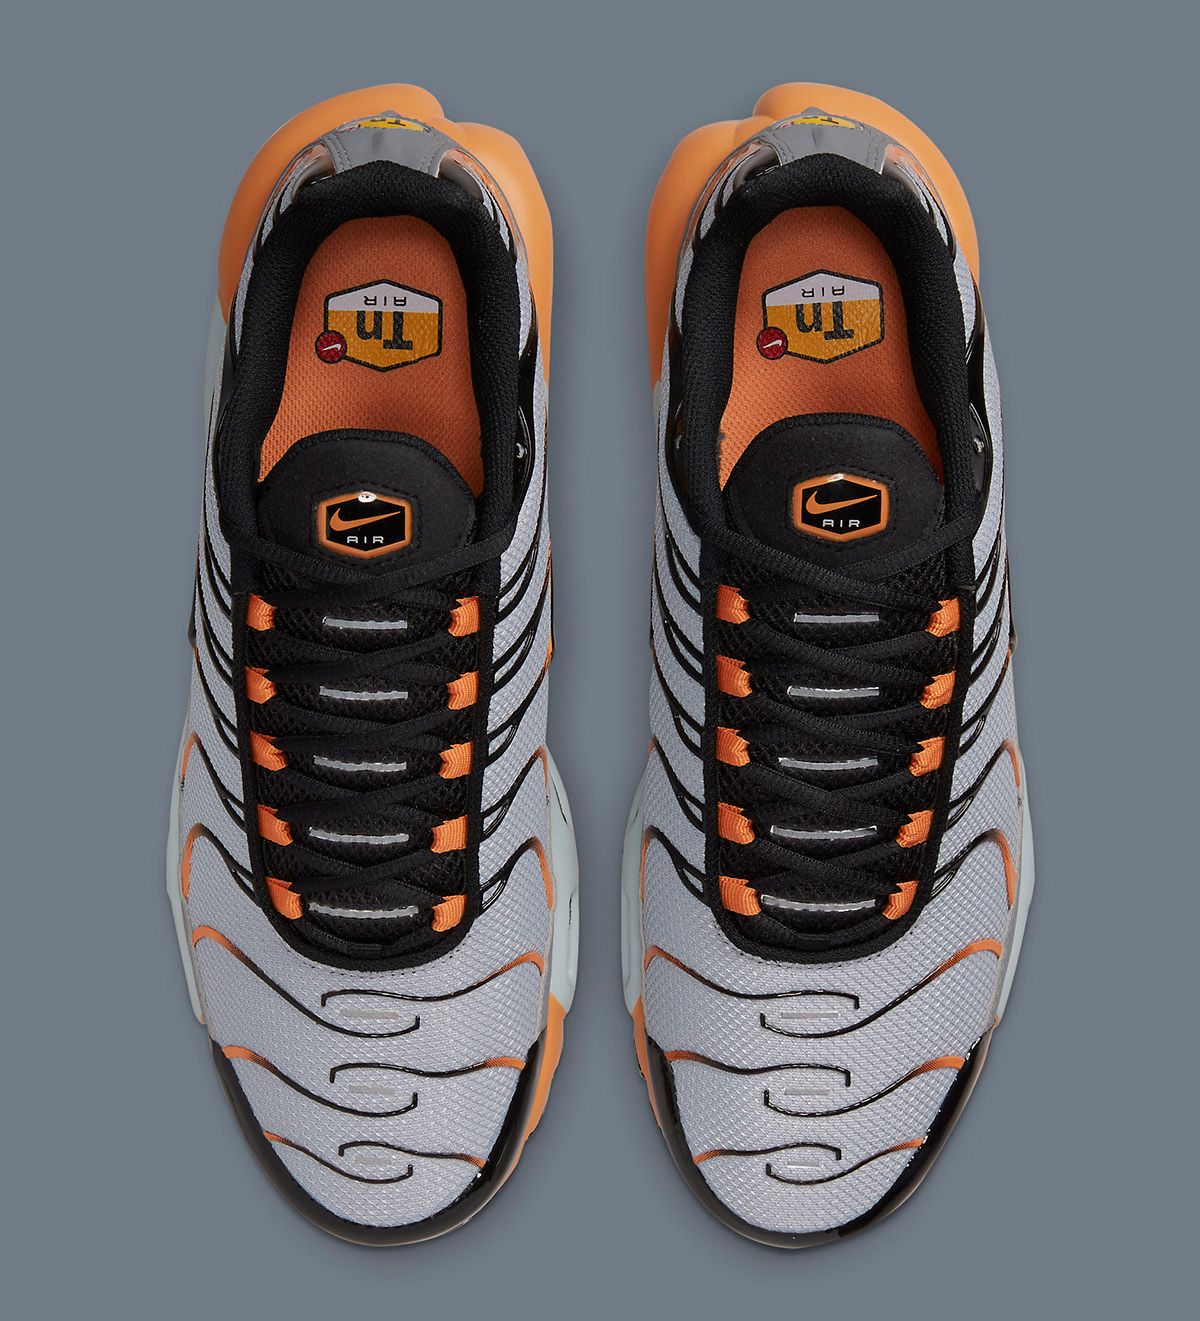 Tientallen sturen Goedaardig The Nike Air Max Plus Appears in Grey, Black and Orange | House of Heat°